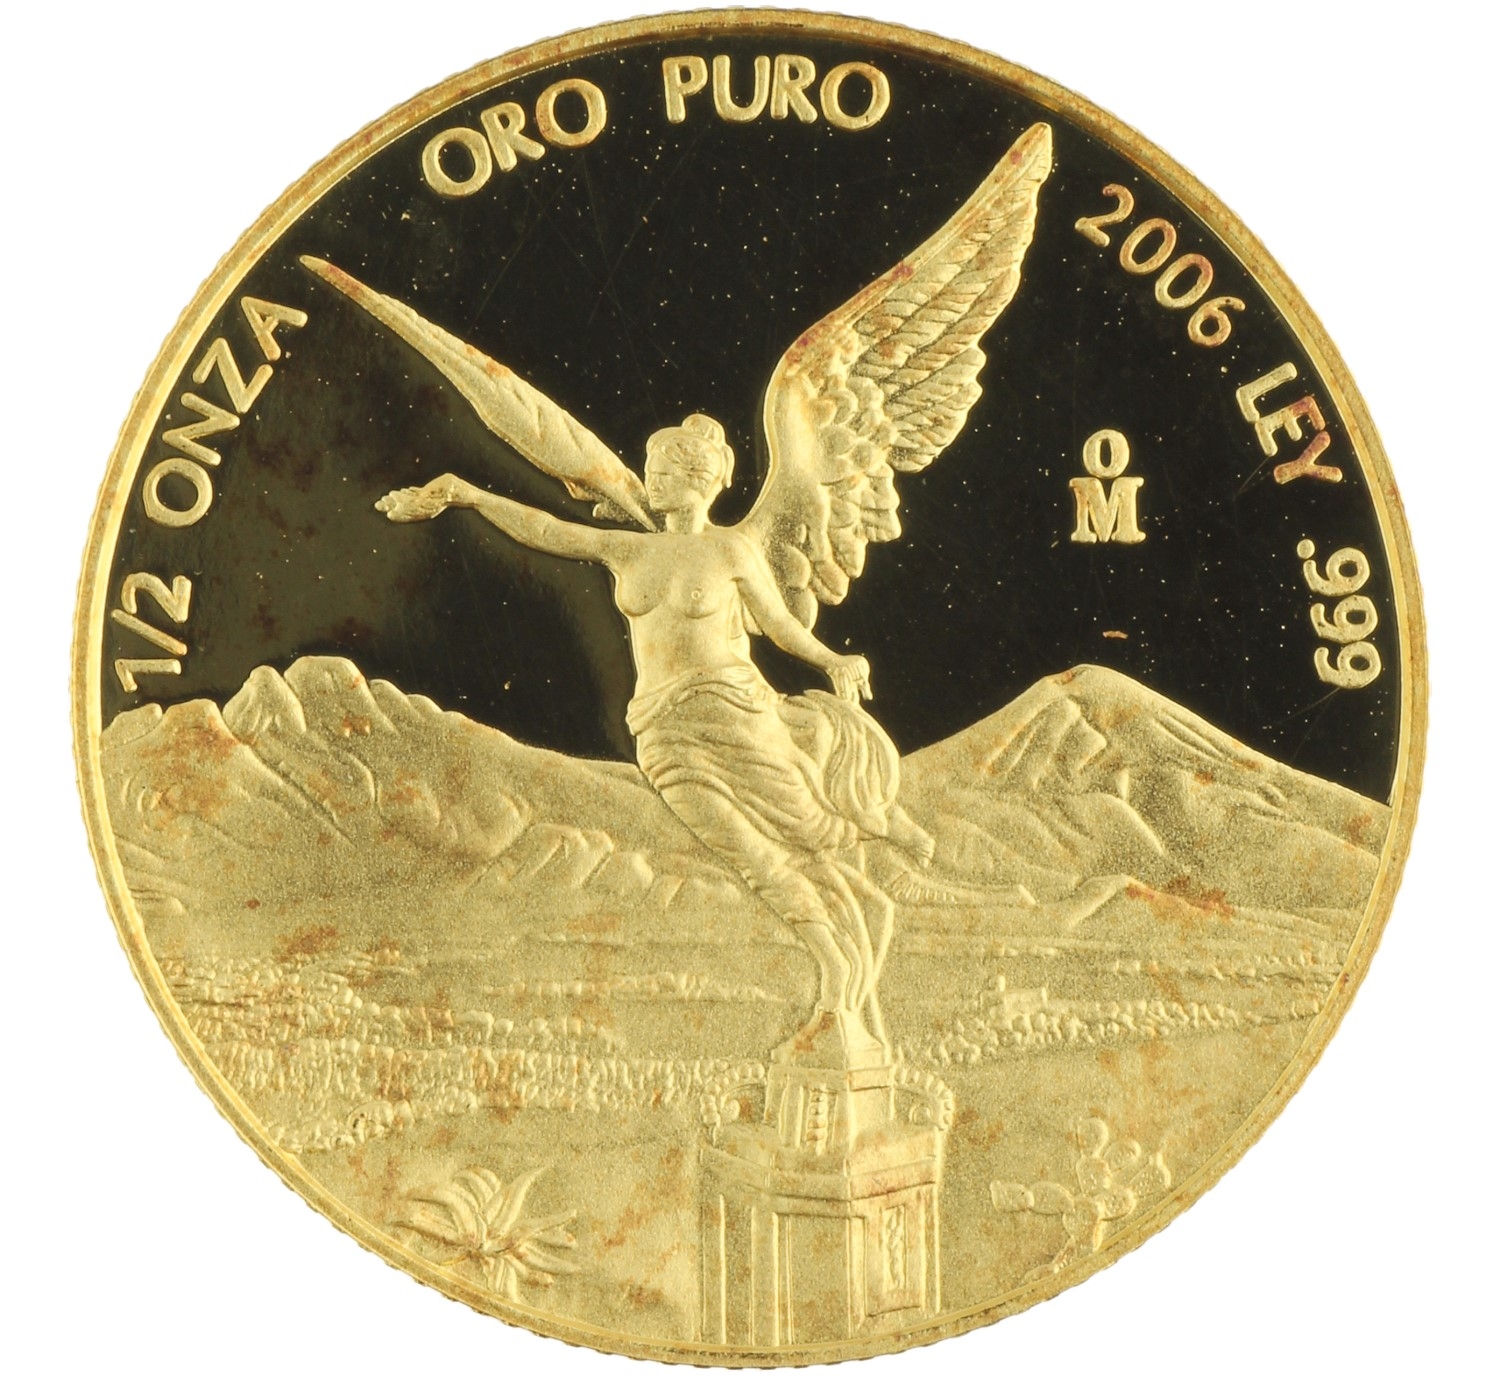 1/2 Onza Oro Puro - Mexico - 2006